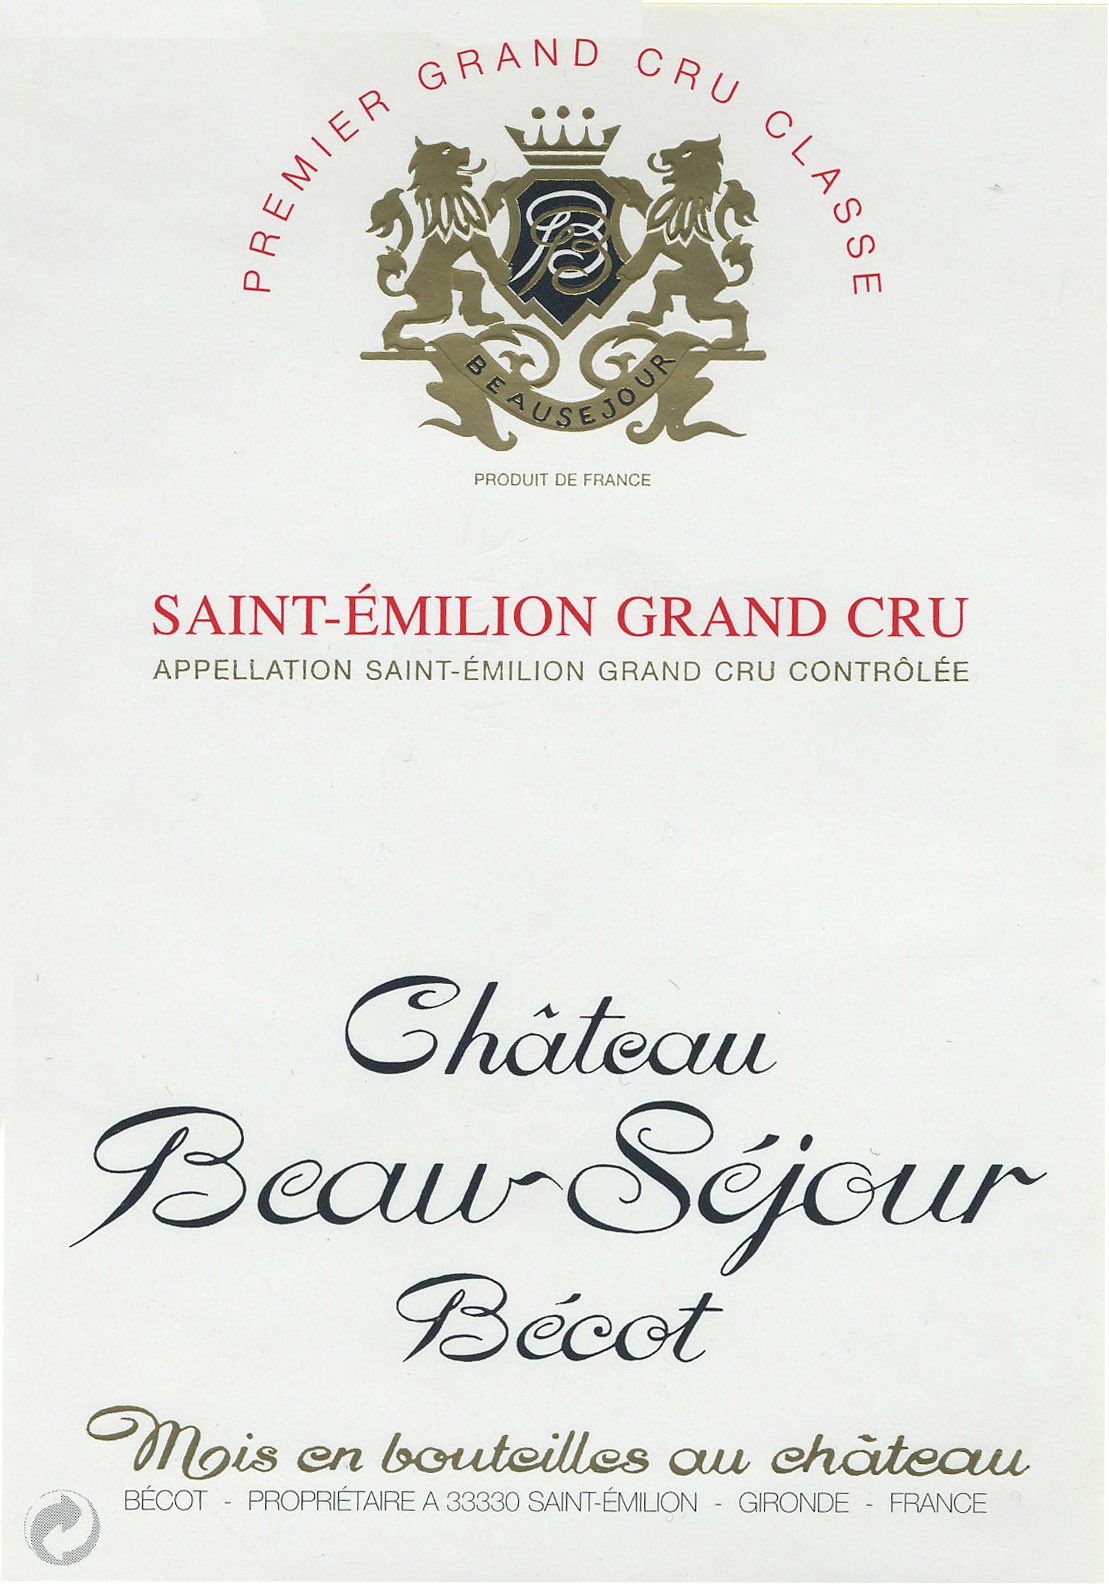 Chateau Beau-Sejour Becot label